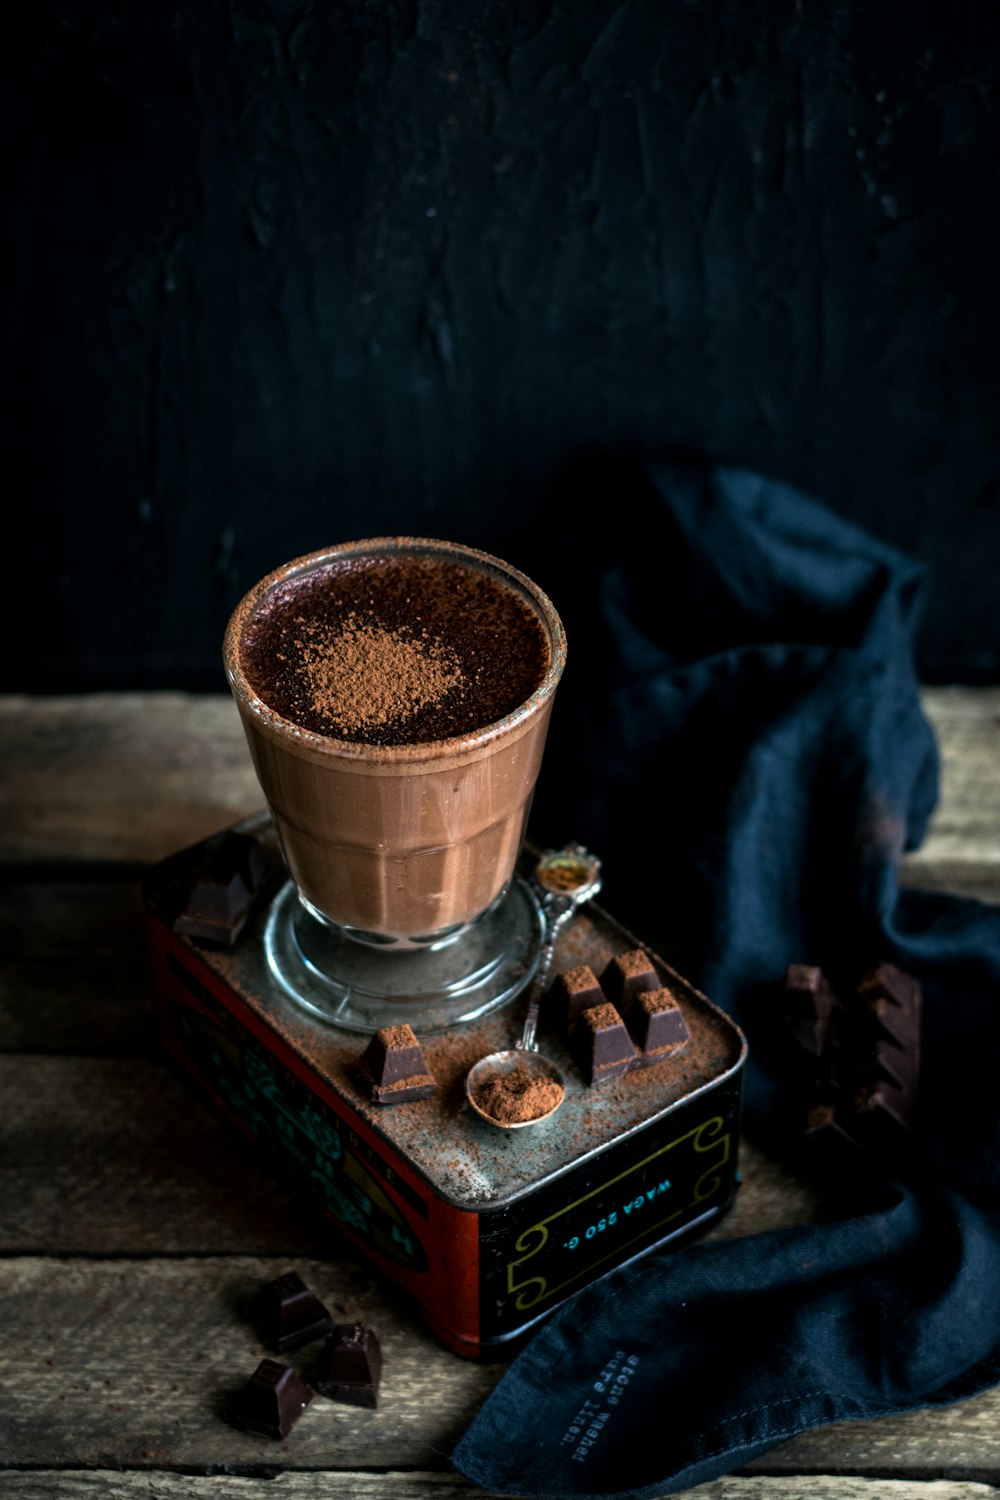 초콜릿 시럽으로 채워진 투명한 음료수 잔 사진